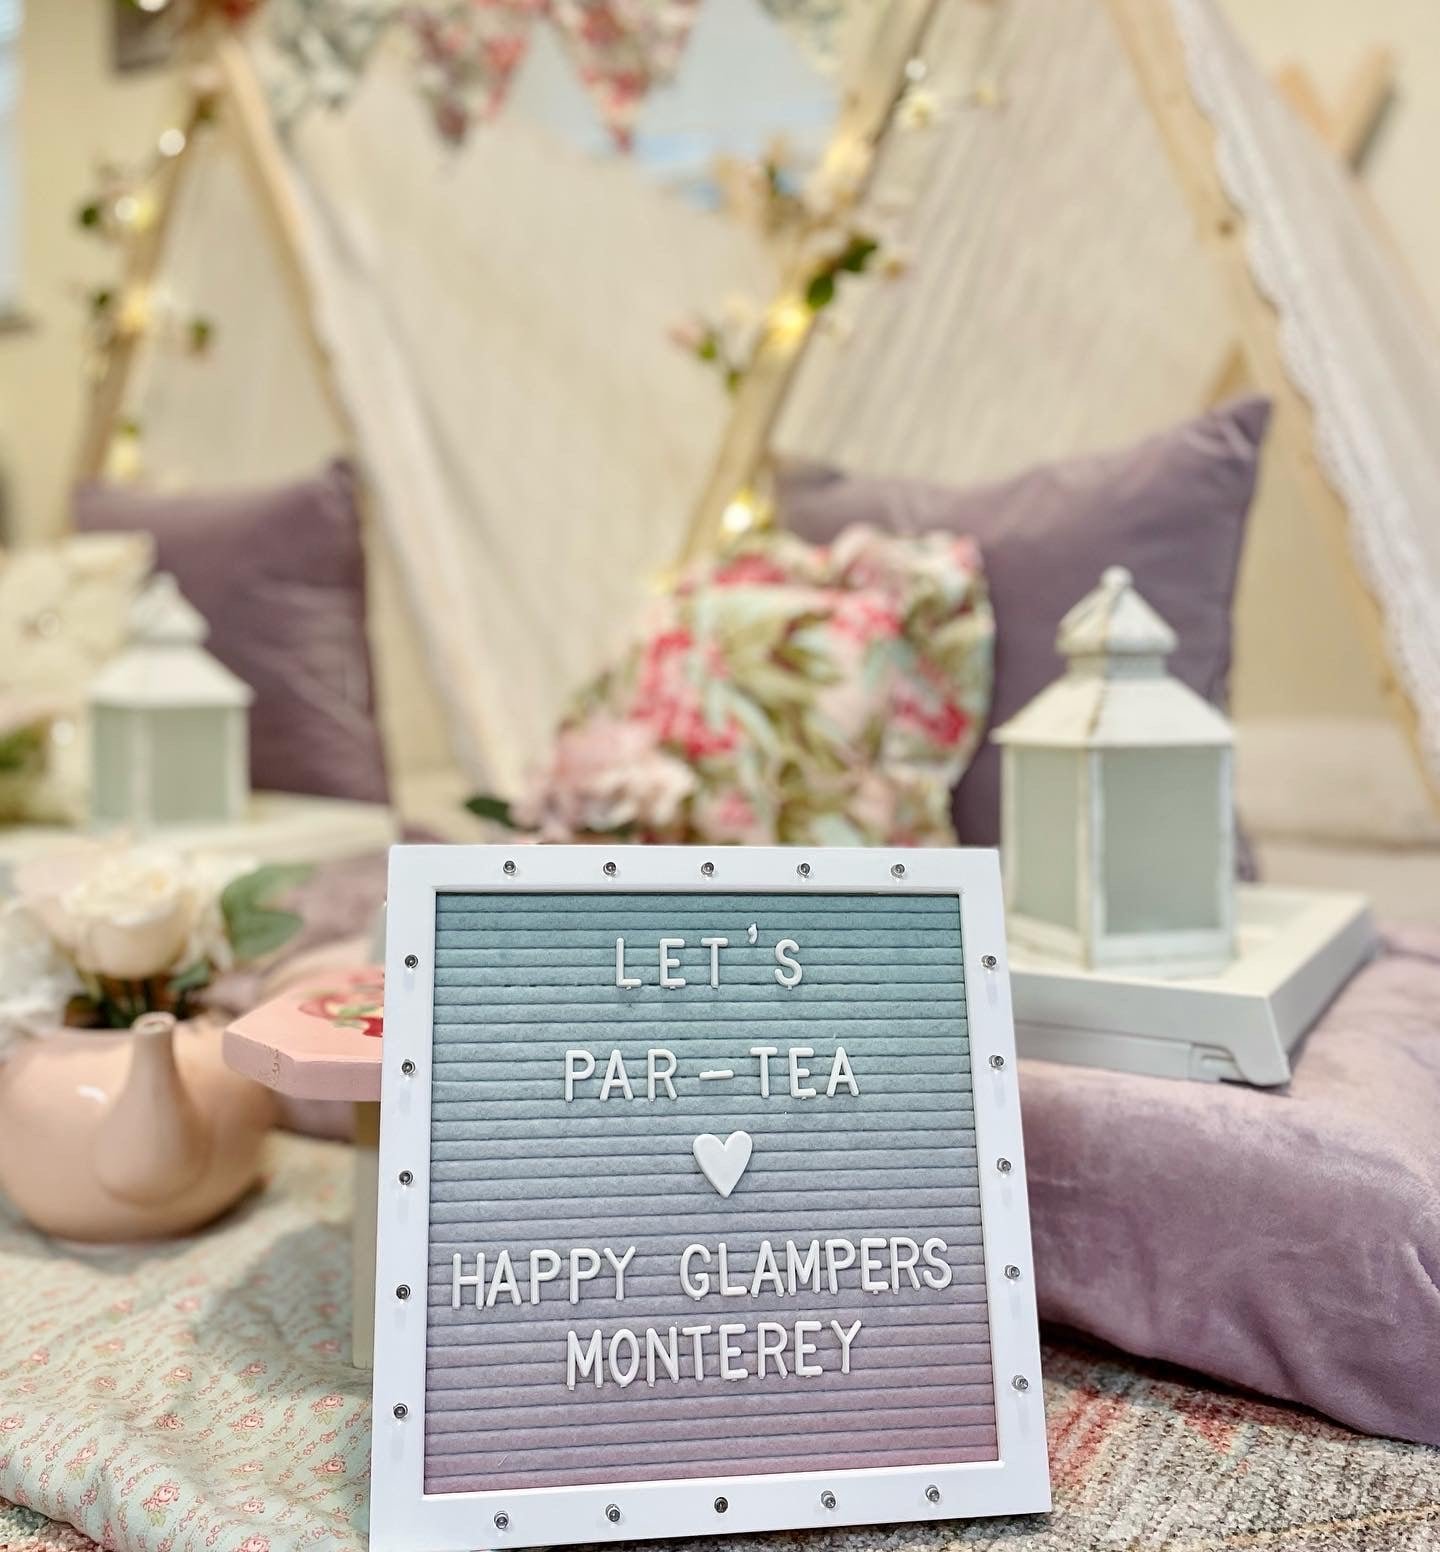 Happy Glampers Monterey- Slumber Party Tent Rentals